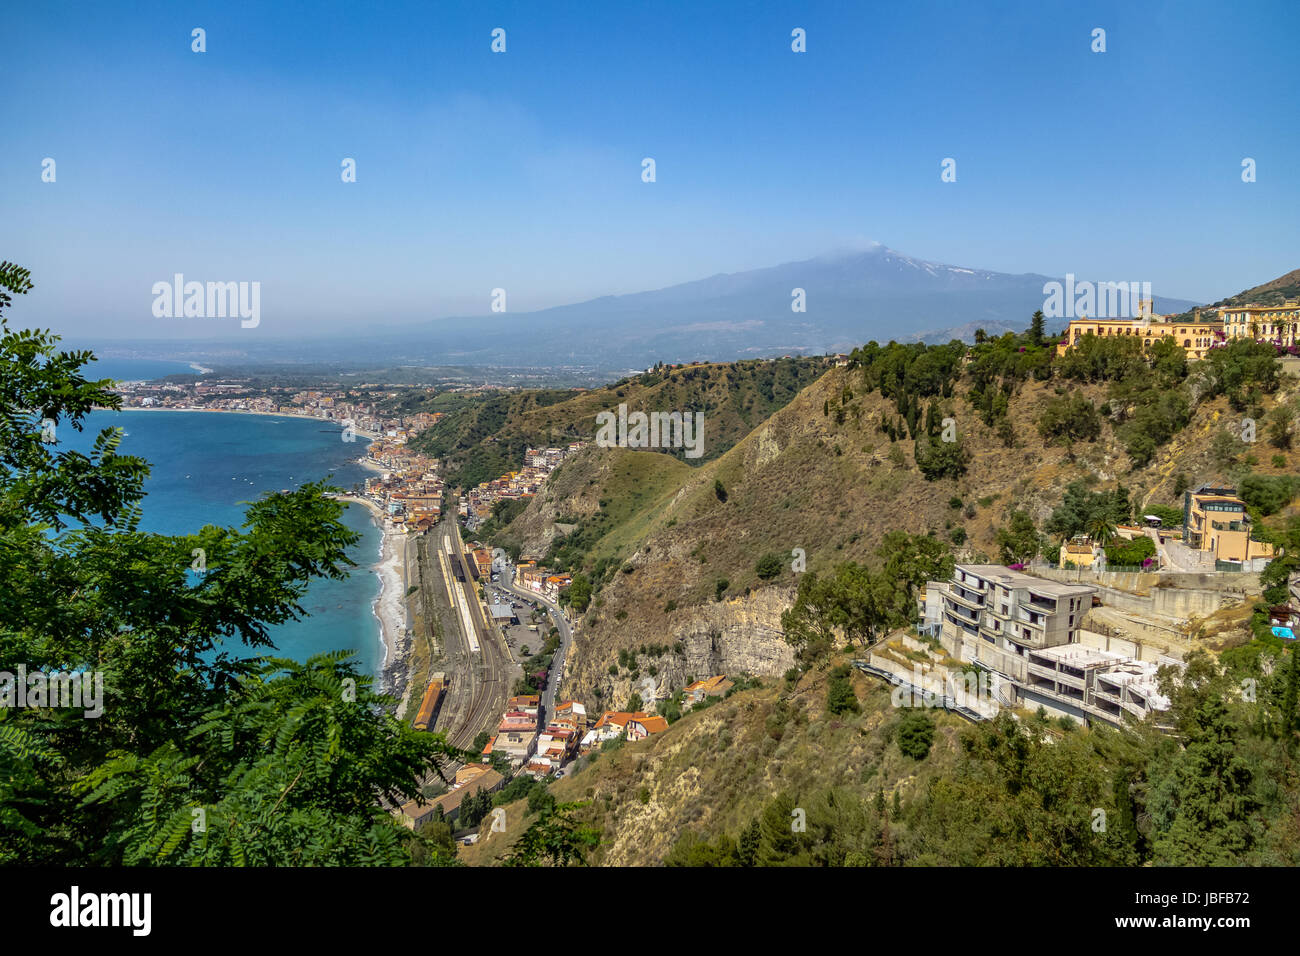 Aerial view of Taormina city, mediterranean sea and Mount Etna Volcano - Taormina, Sicily, Italy Stock Photo